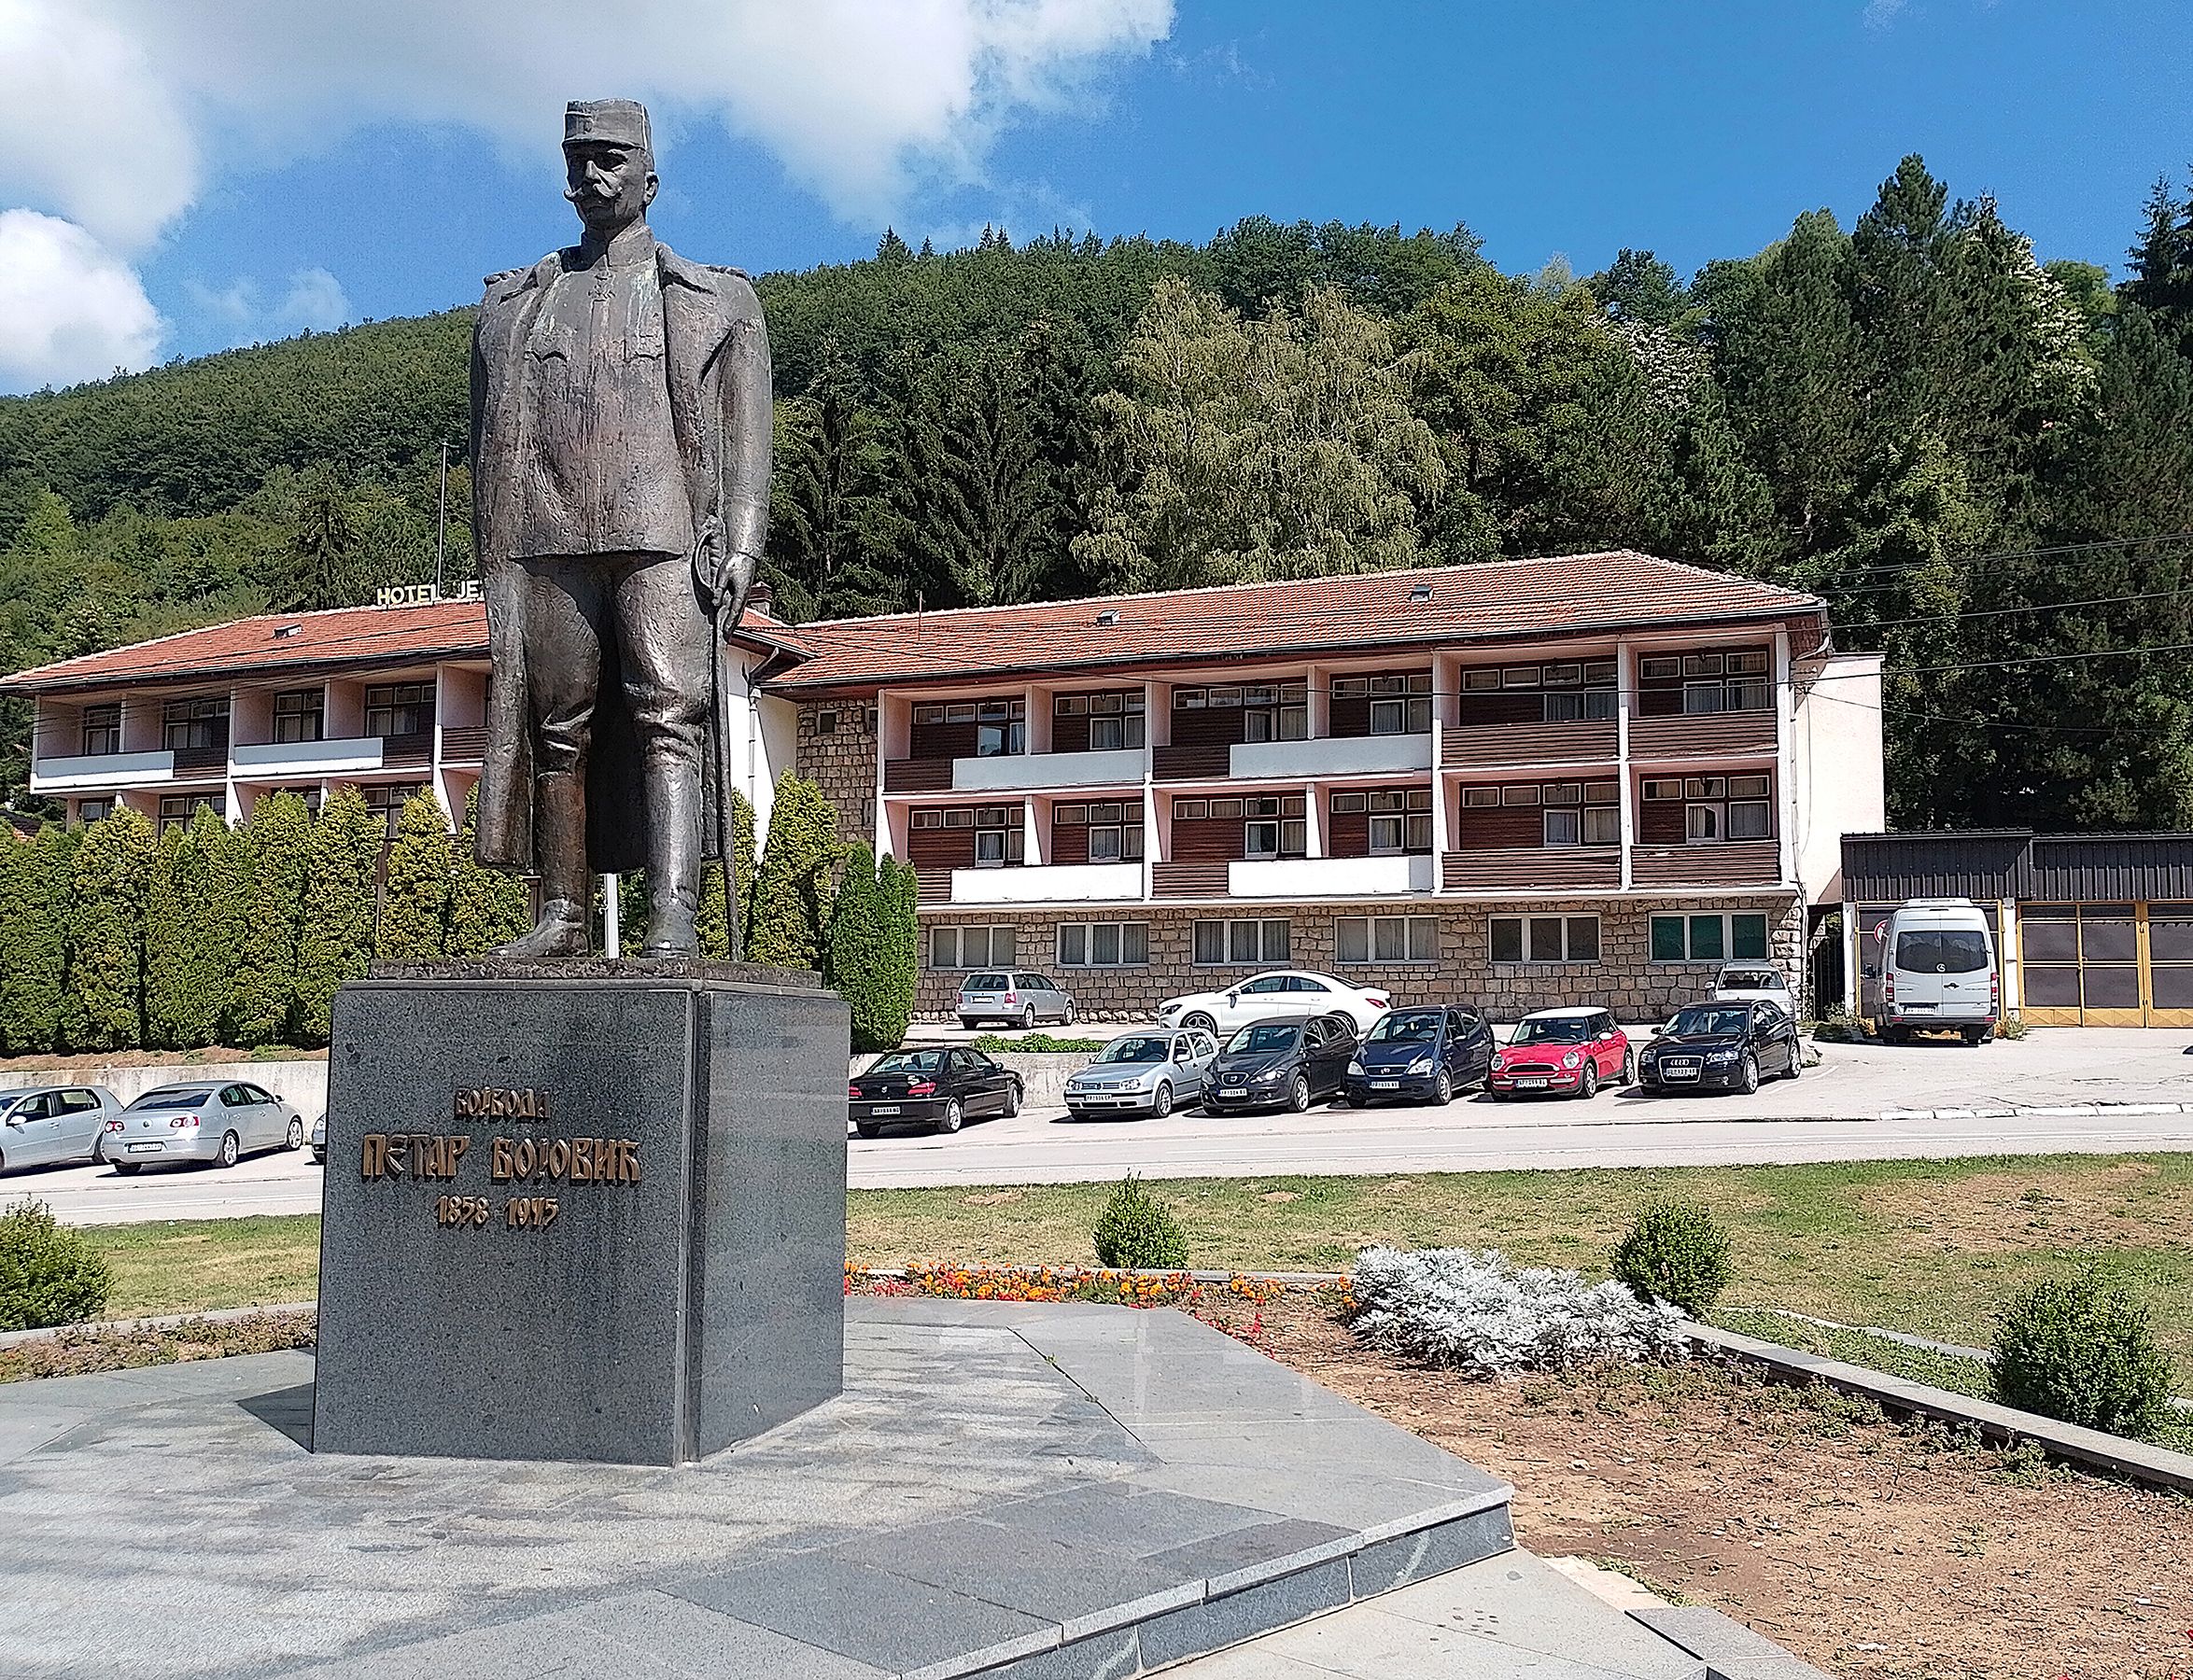 Споменик војводи Бојовићу чека цвеће и поправке мермерних плоча